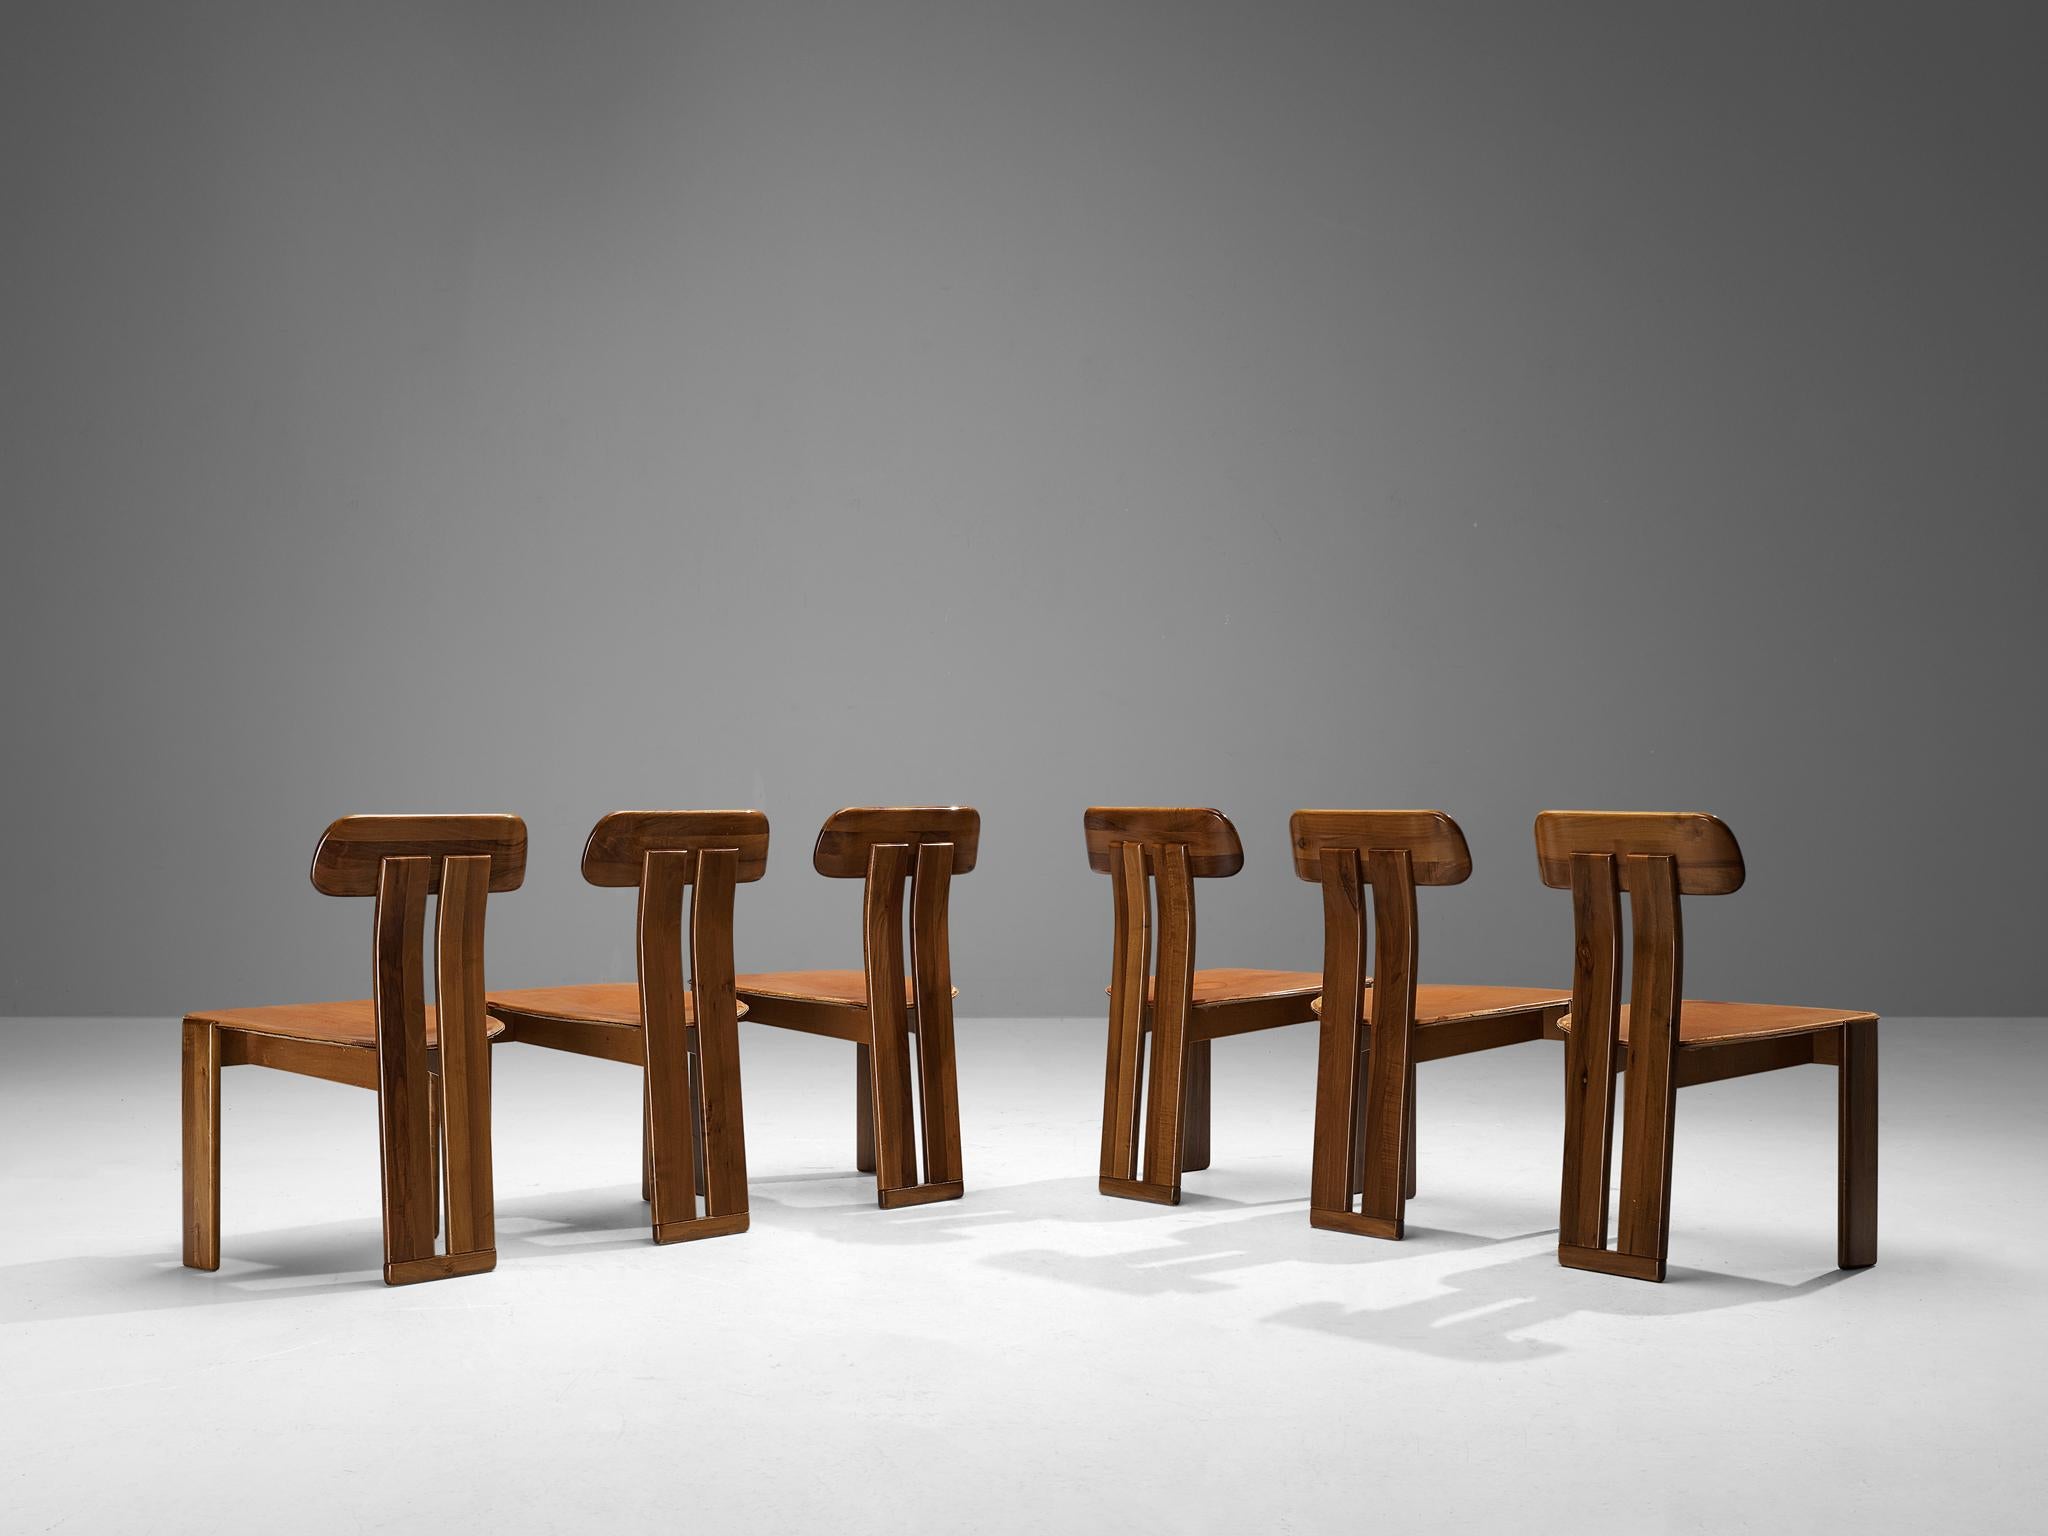 Mario Marenco pour Mobil Girgi, ensemble de six chaises de salle à manger modèle 'Sapporo', noyer, cuir cognac, Italie, années 1970.

Cet ensemble divin de six chaises de salle à manger a été conçu par l'Italien Mario Marenco dans les années 1970.